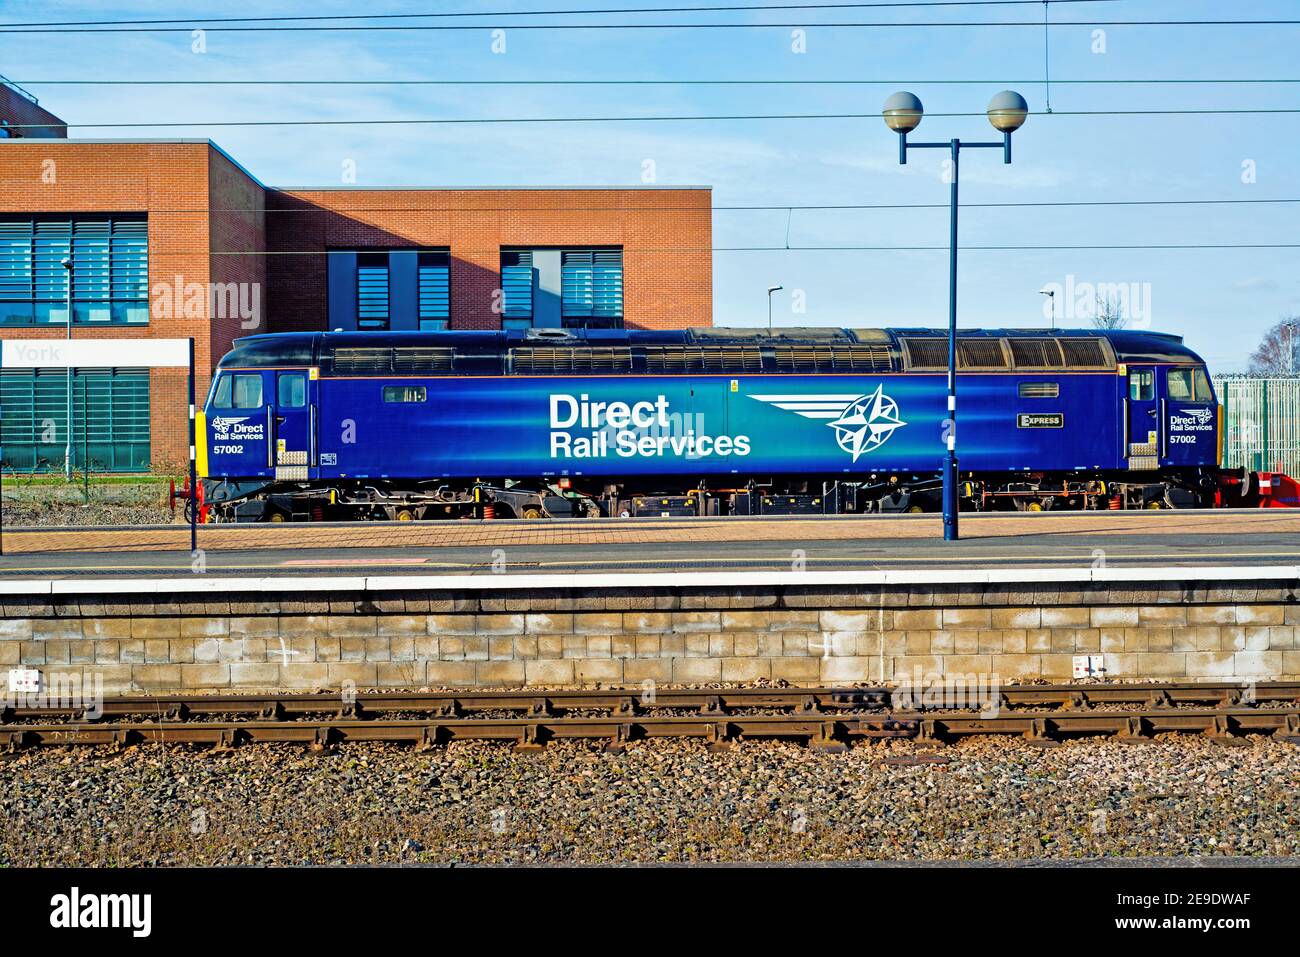 Direct Rail Services Class 52002 Express a été poignardé à York Railway Station Angleterre le 1er février 2021 Banque D'Images